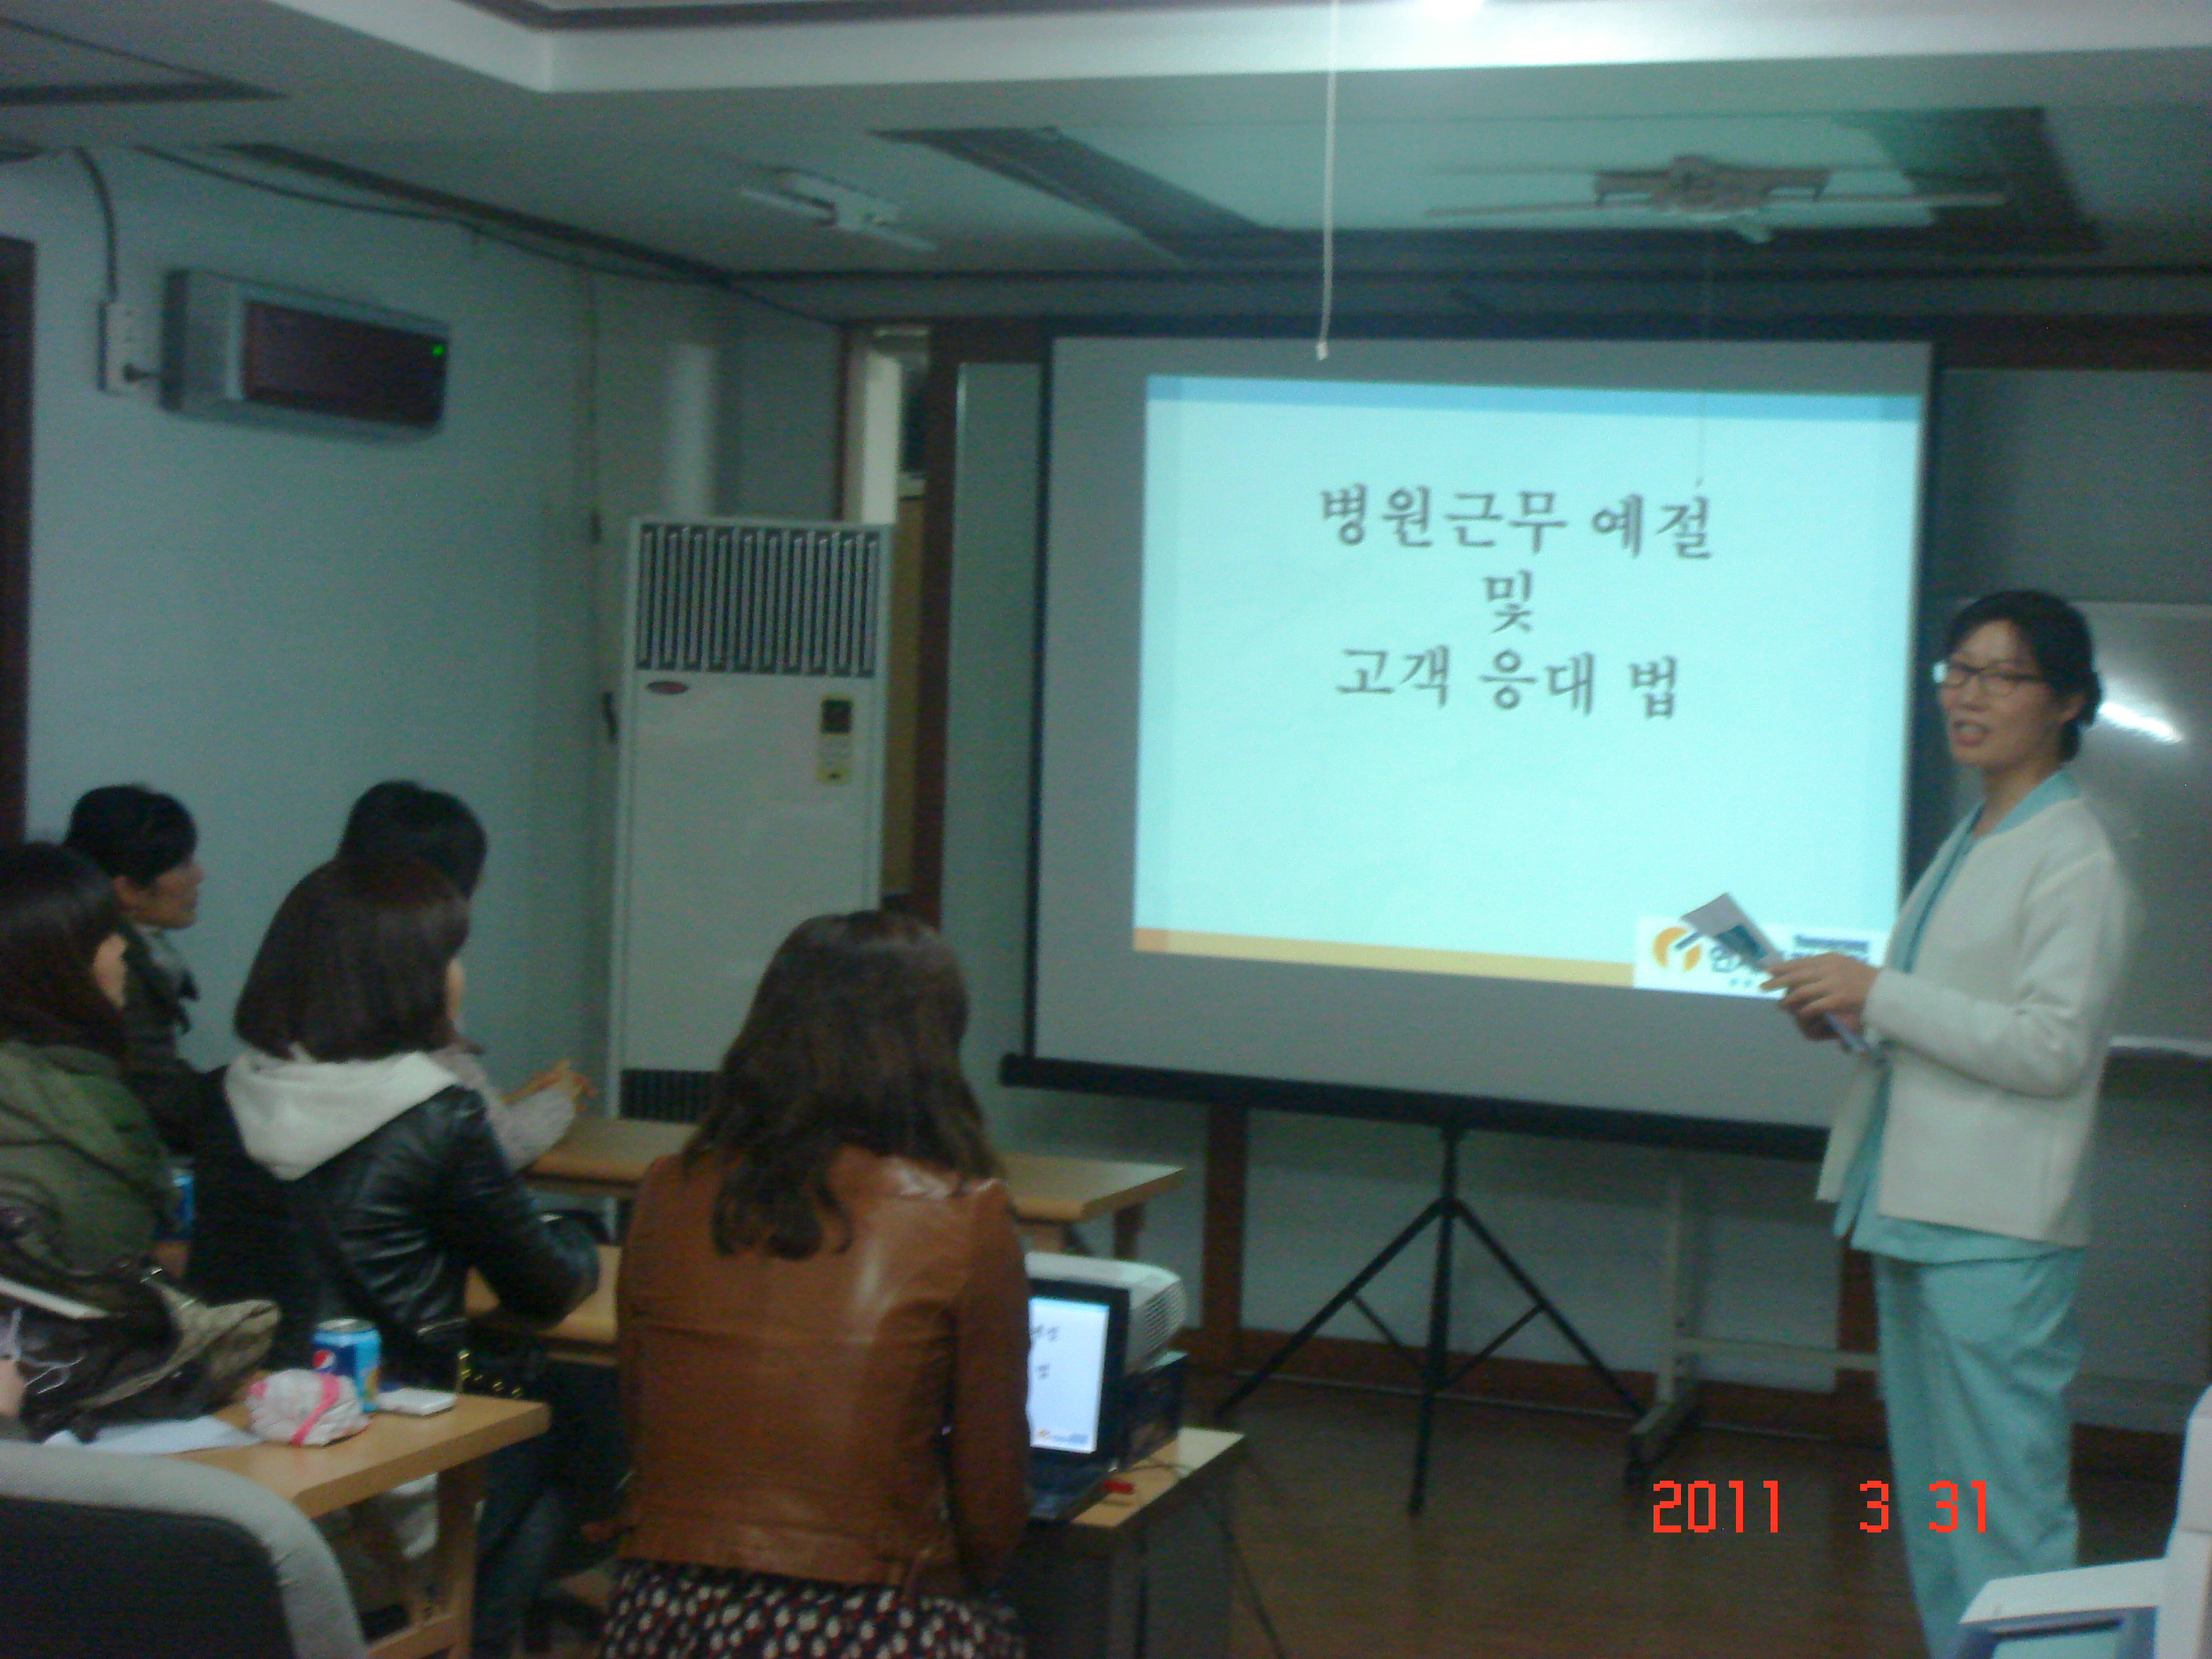 [강북점] 2011년 3월 31일 - 직무교육 실시 게시글의 1번째 첨부파일입니다.